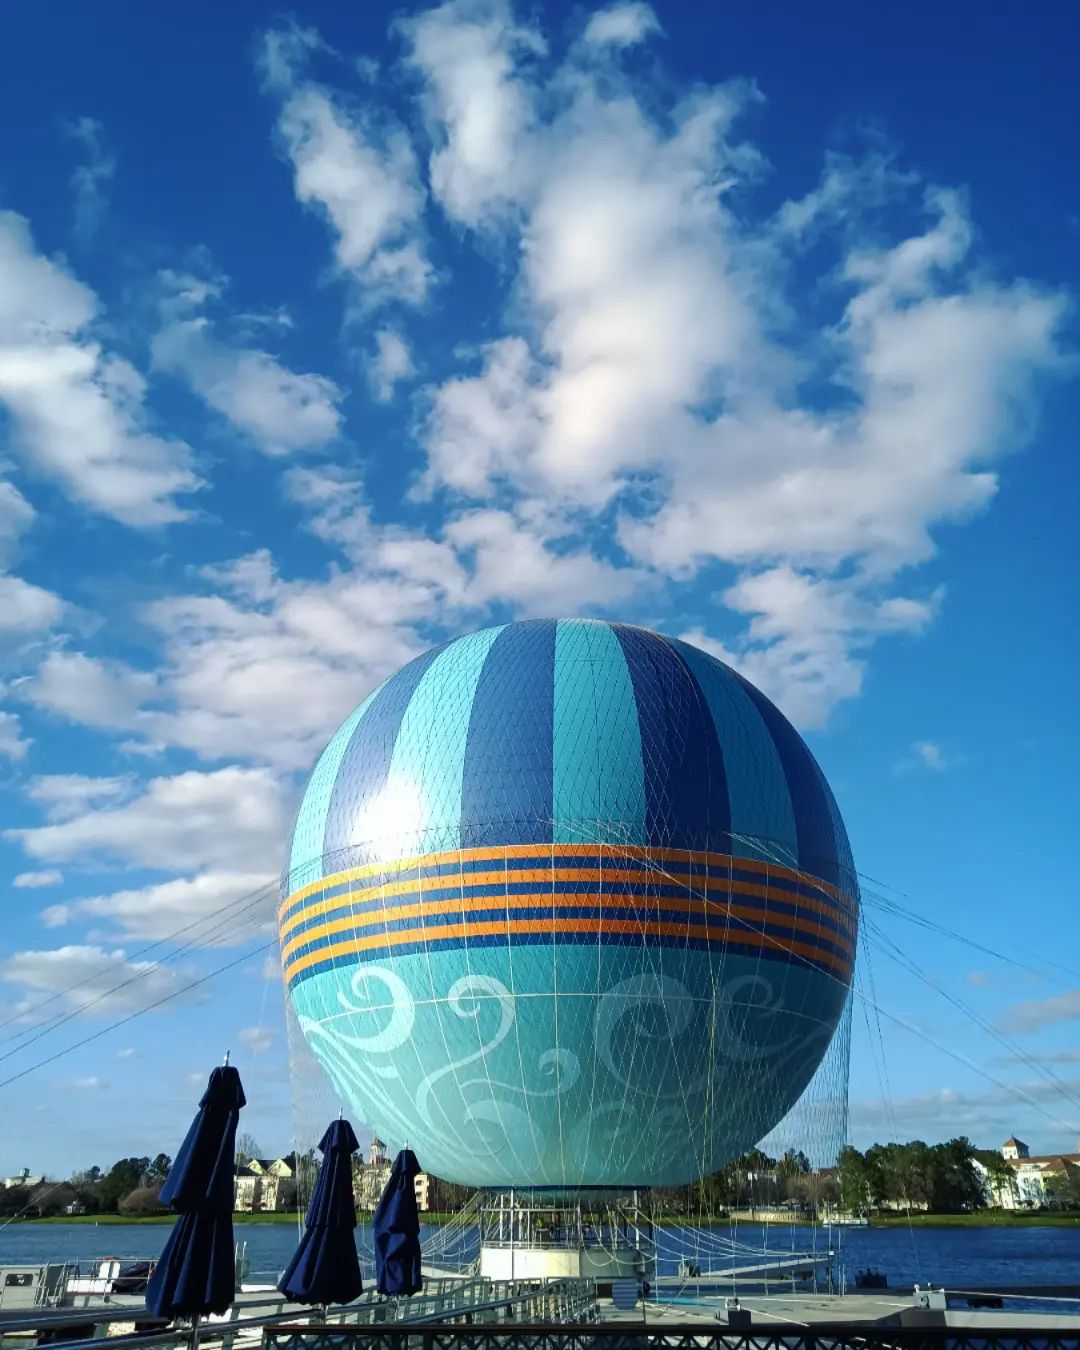 Aerophile - Ballon Disney Springs